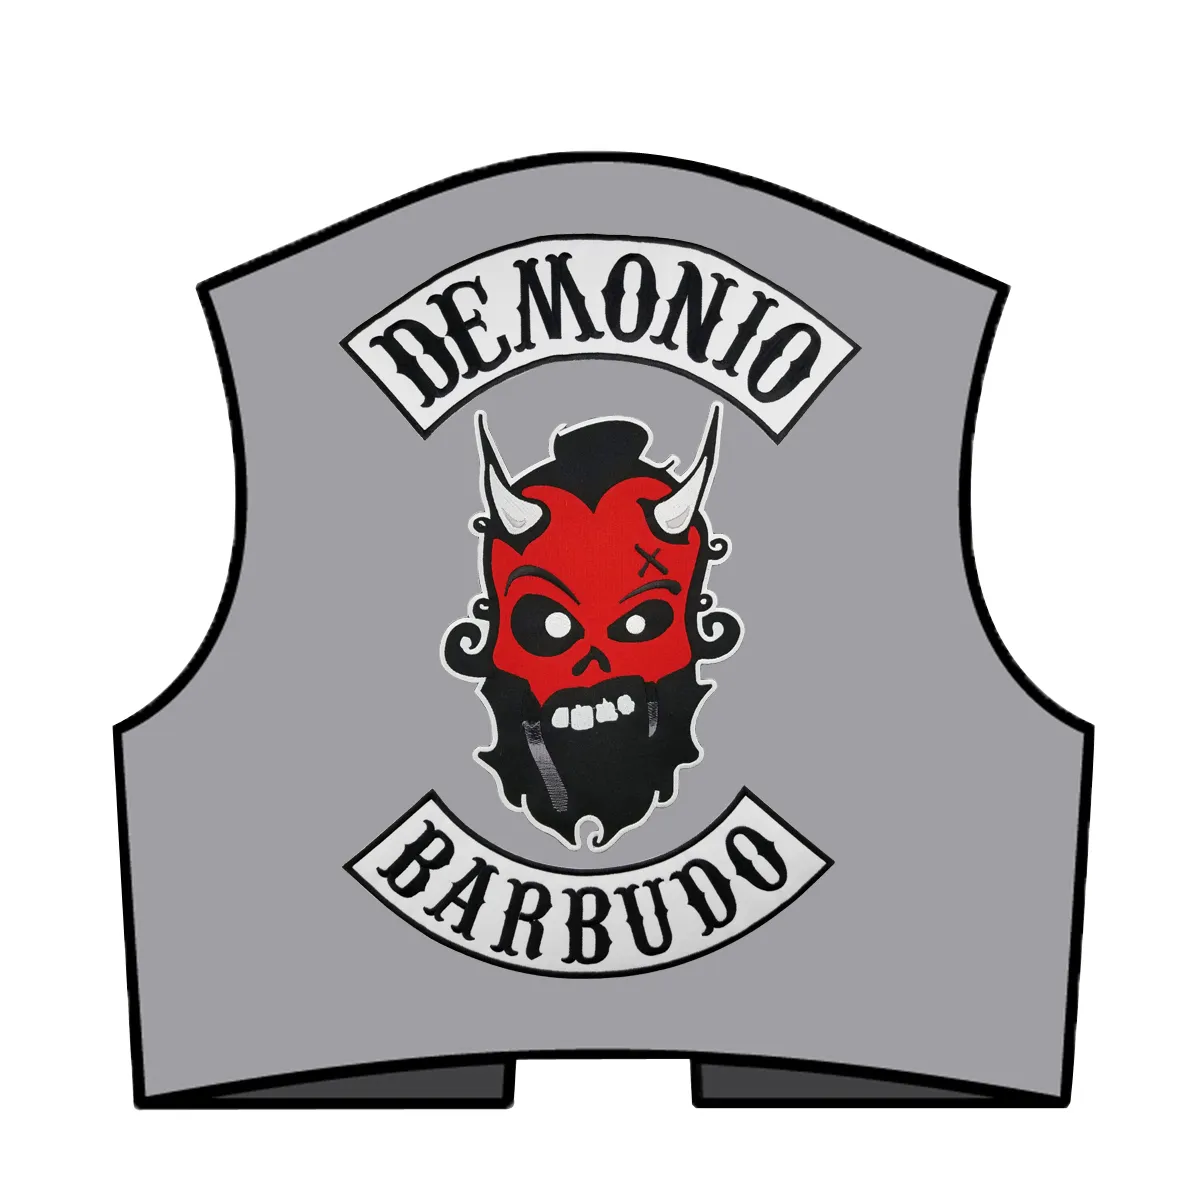 Venda Quente Demonio Barbudo Motocicleta Grande Patch Club Colete Outlaw Biker MC Patch Frete Grátis